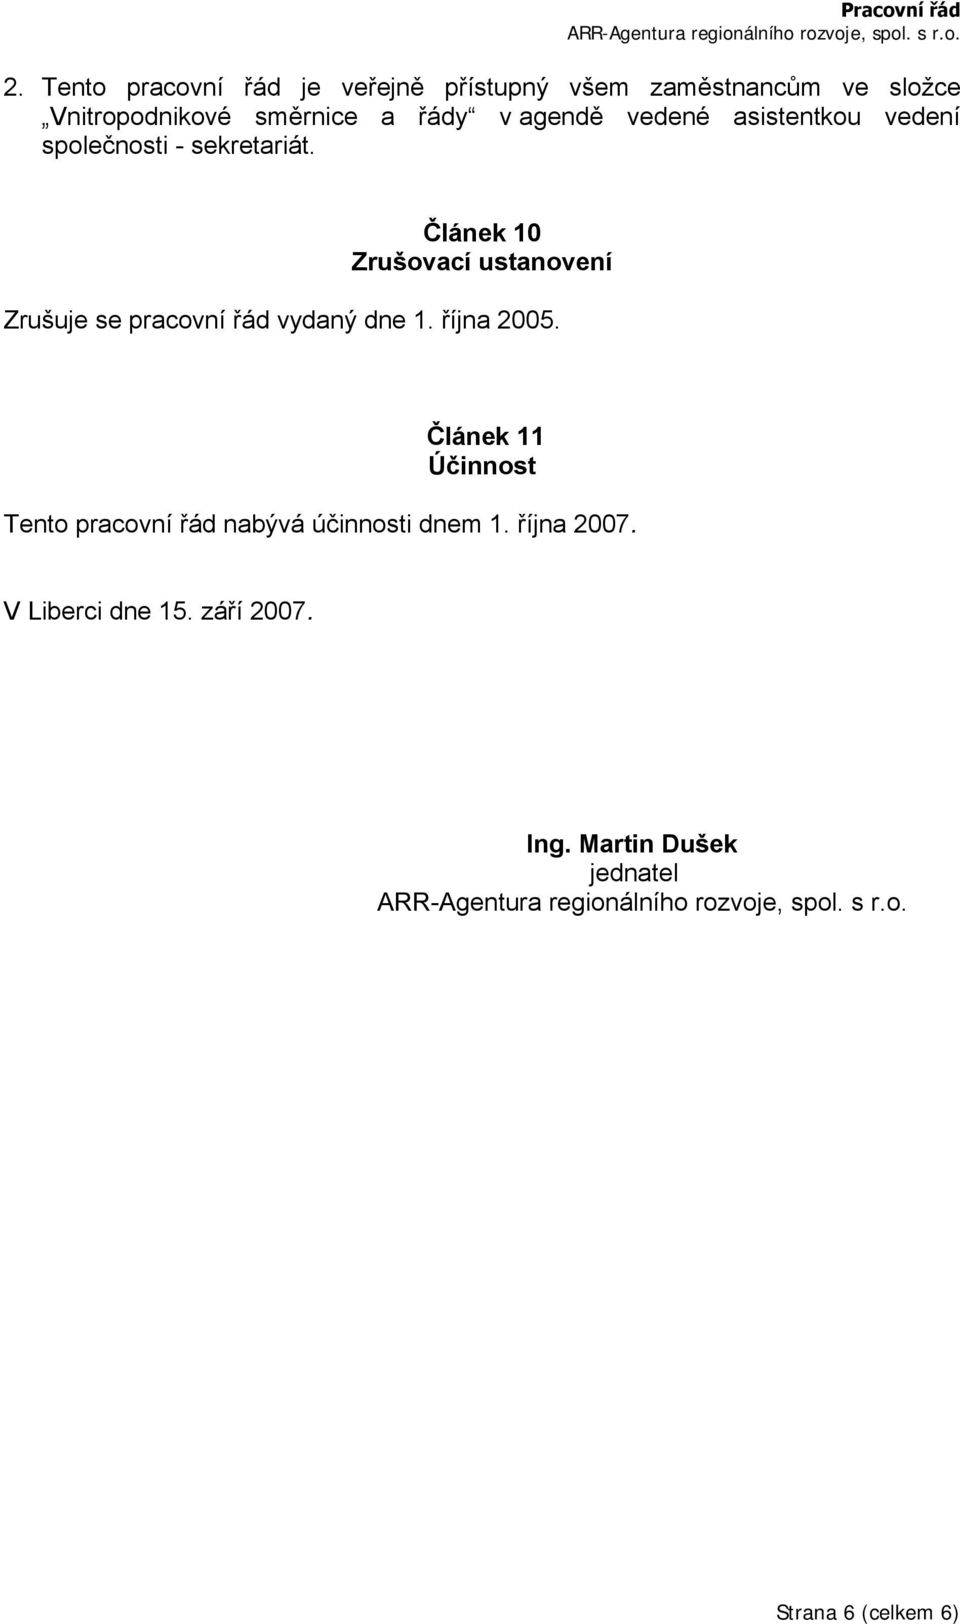 Článek 10 Zrušovací ustanovení Zrušuje se pracovní řád vydaný dne 1. října 2005.